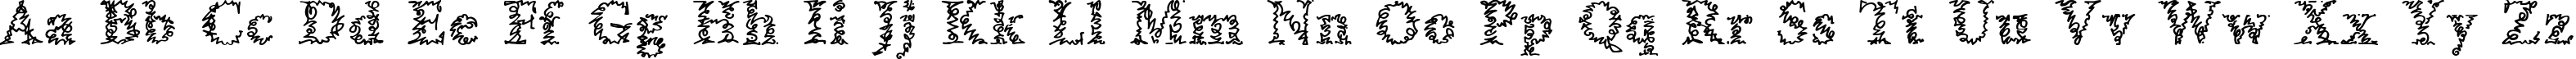 Пример написания английского алфавита шрифтом a Morris line